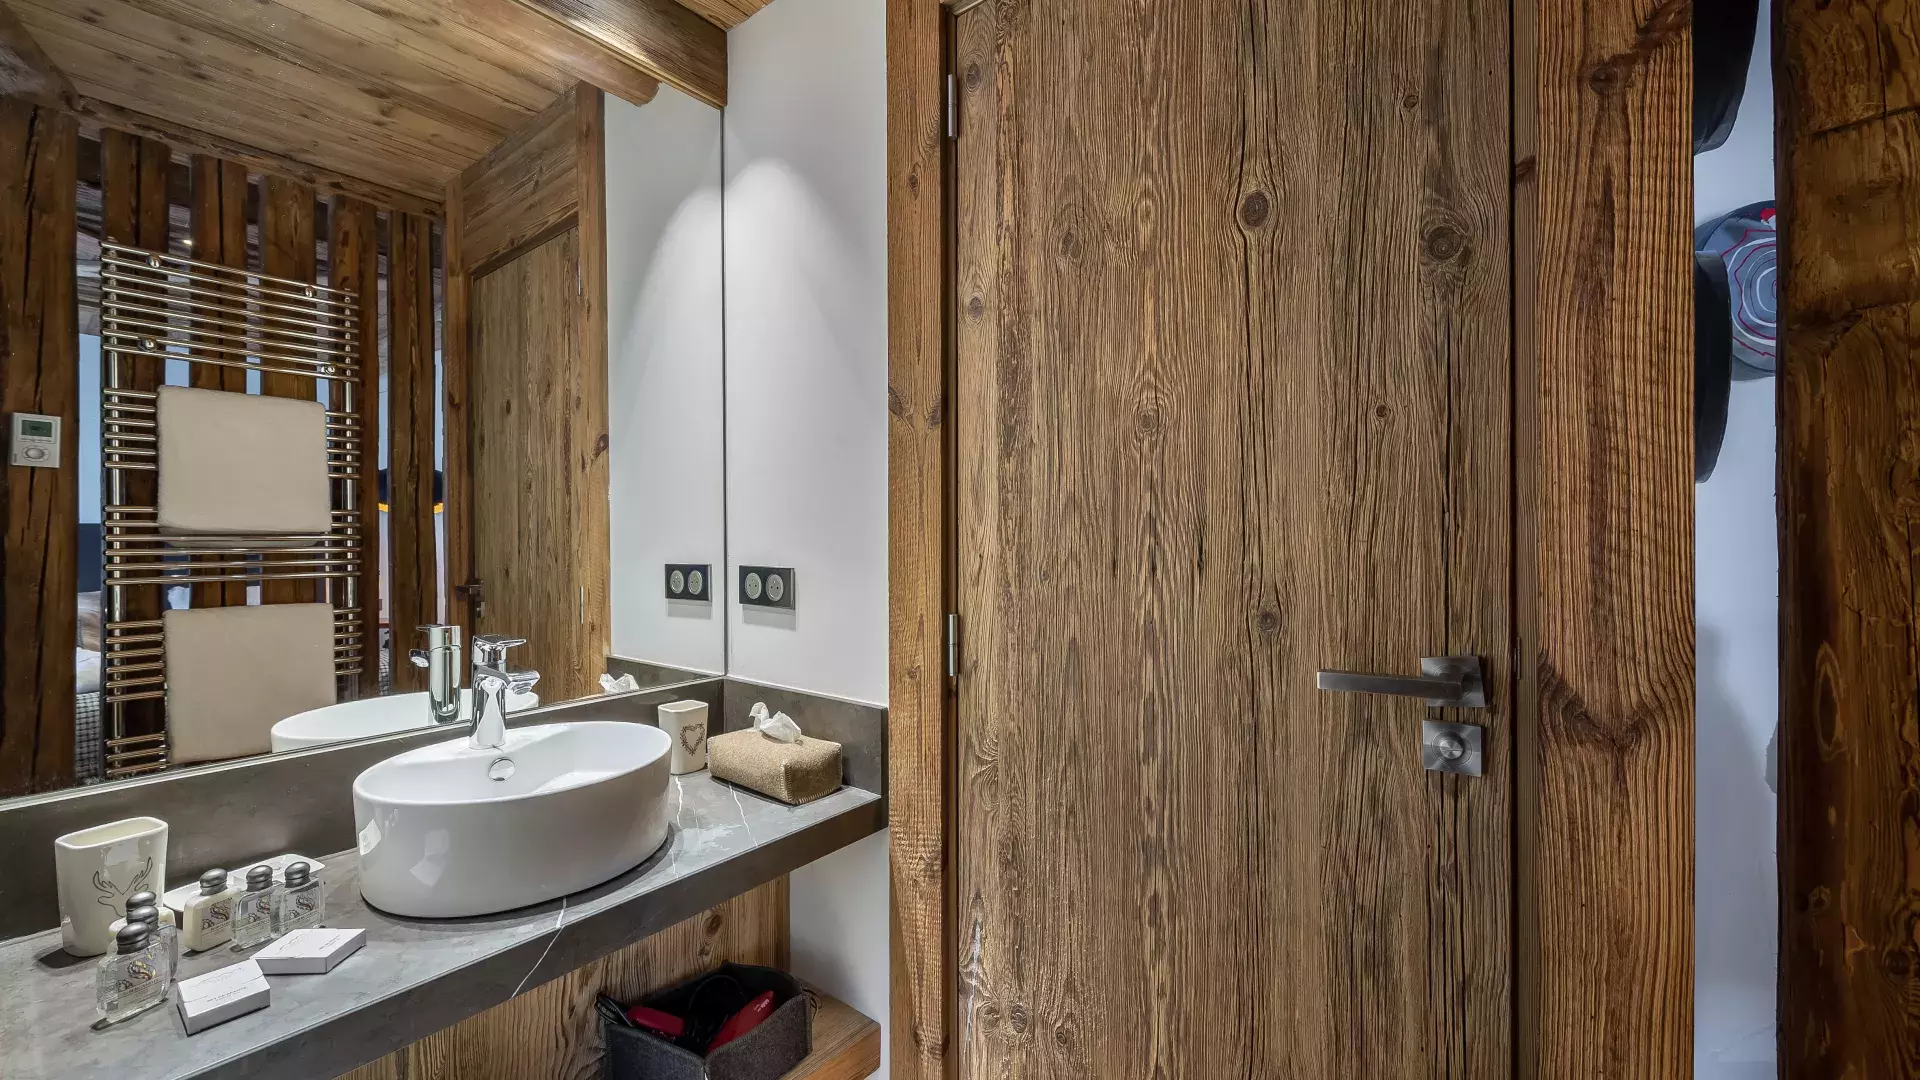 Appartement Penthouse Savoie 1 - Location chalets Covarel - Val d'Isère Alpes - France - Salle de bain 3